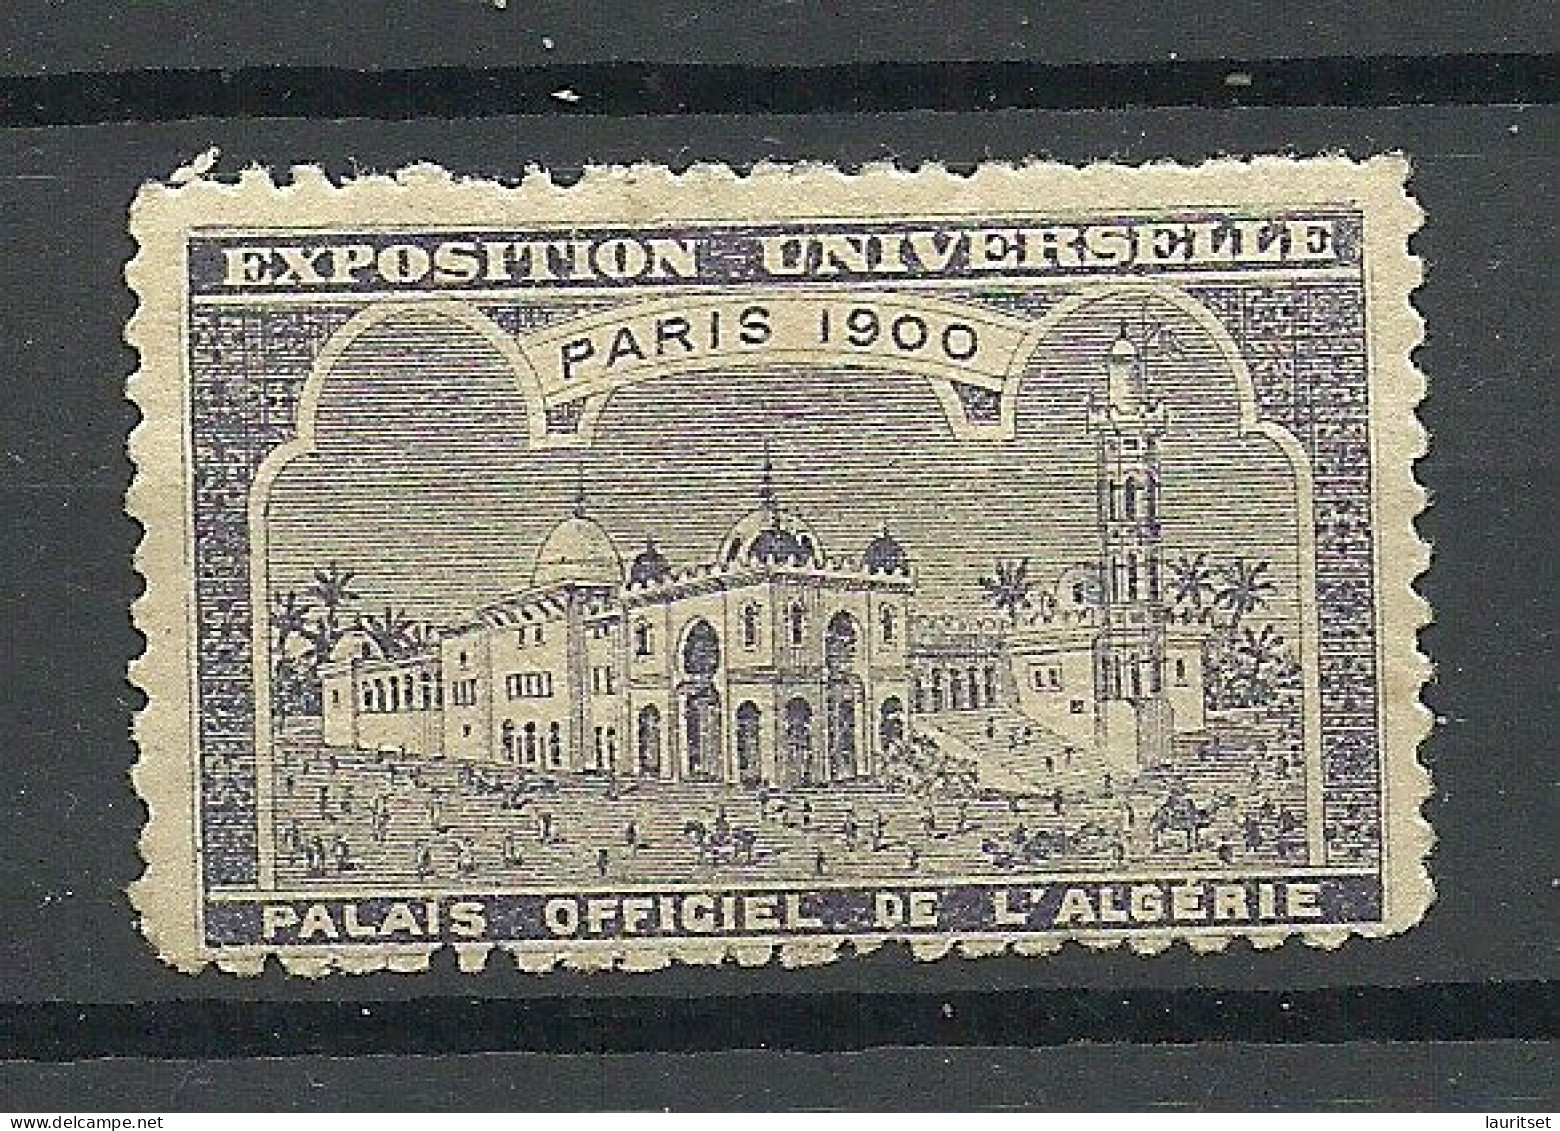 France 1900 EXPOSITION UNIVERSELLE Paris Algeria L`Algerie * - 1900 – Paris (France)